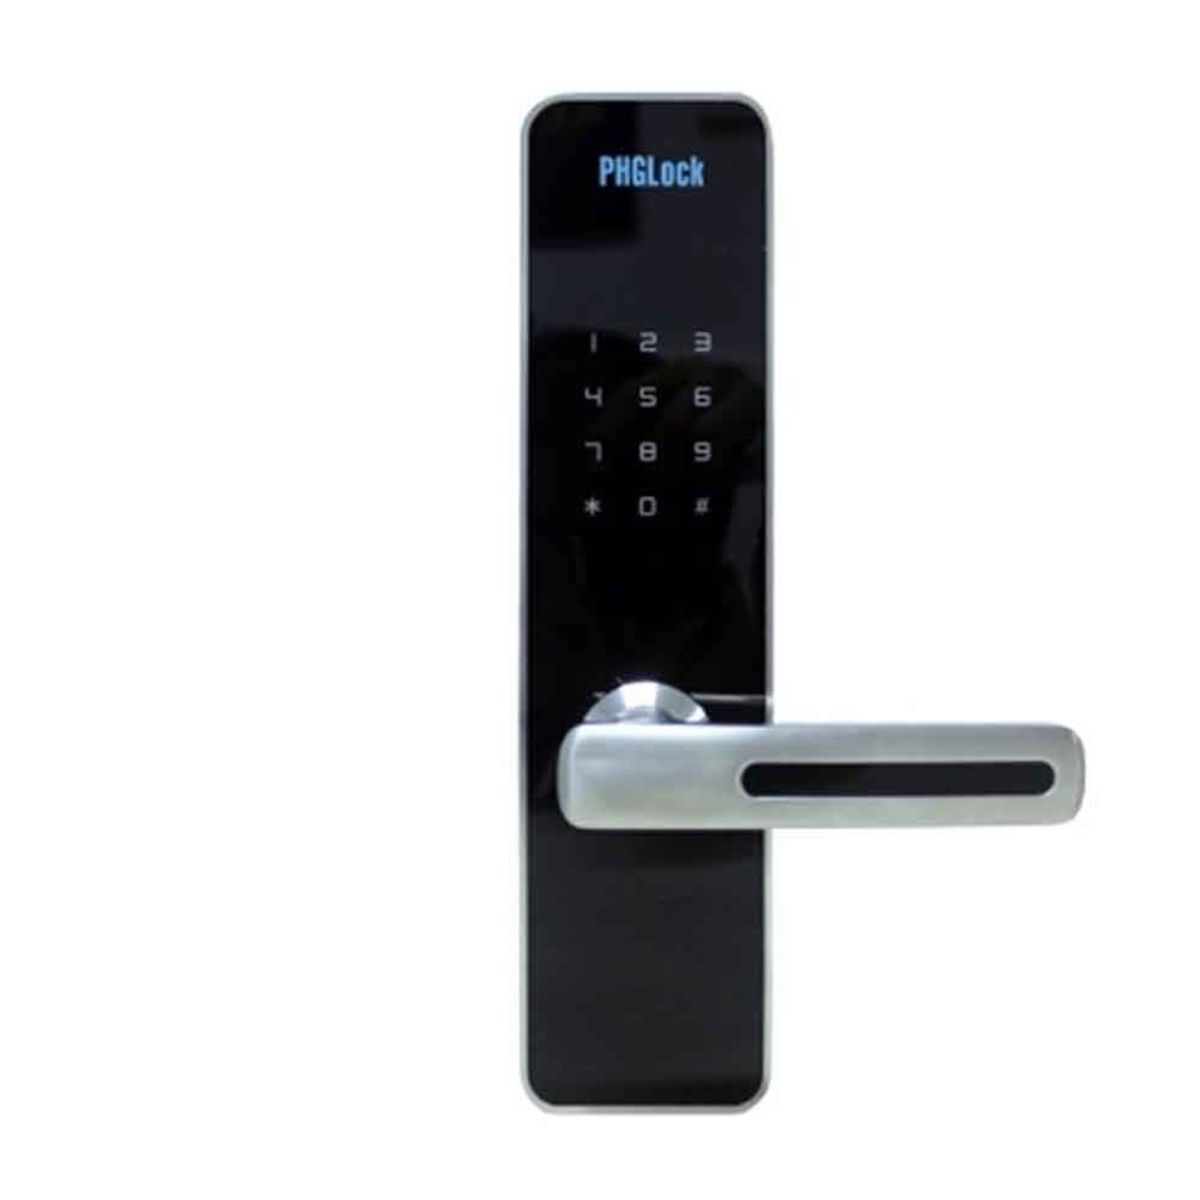 Khóa cửa tay gạt cho căn hộ, nhà phố PHGLock KR7153 màu bạc thẻ MI, mật mã và chìa khóa cơ